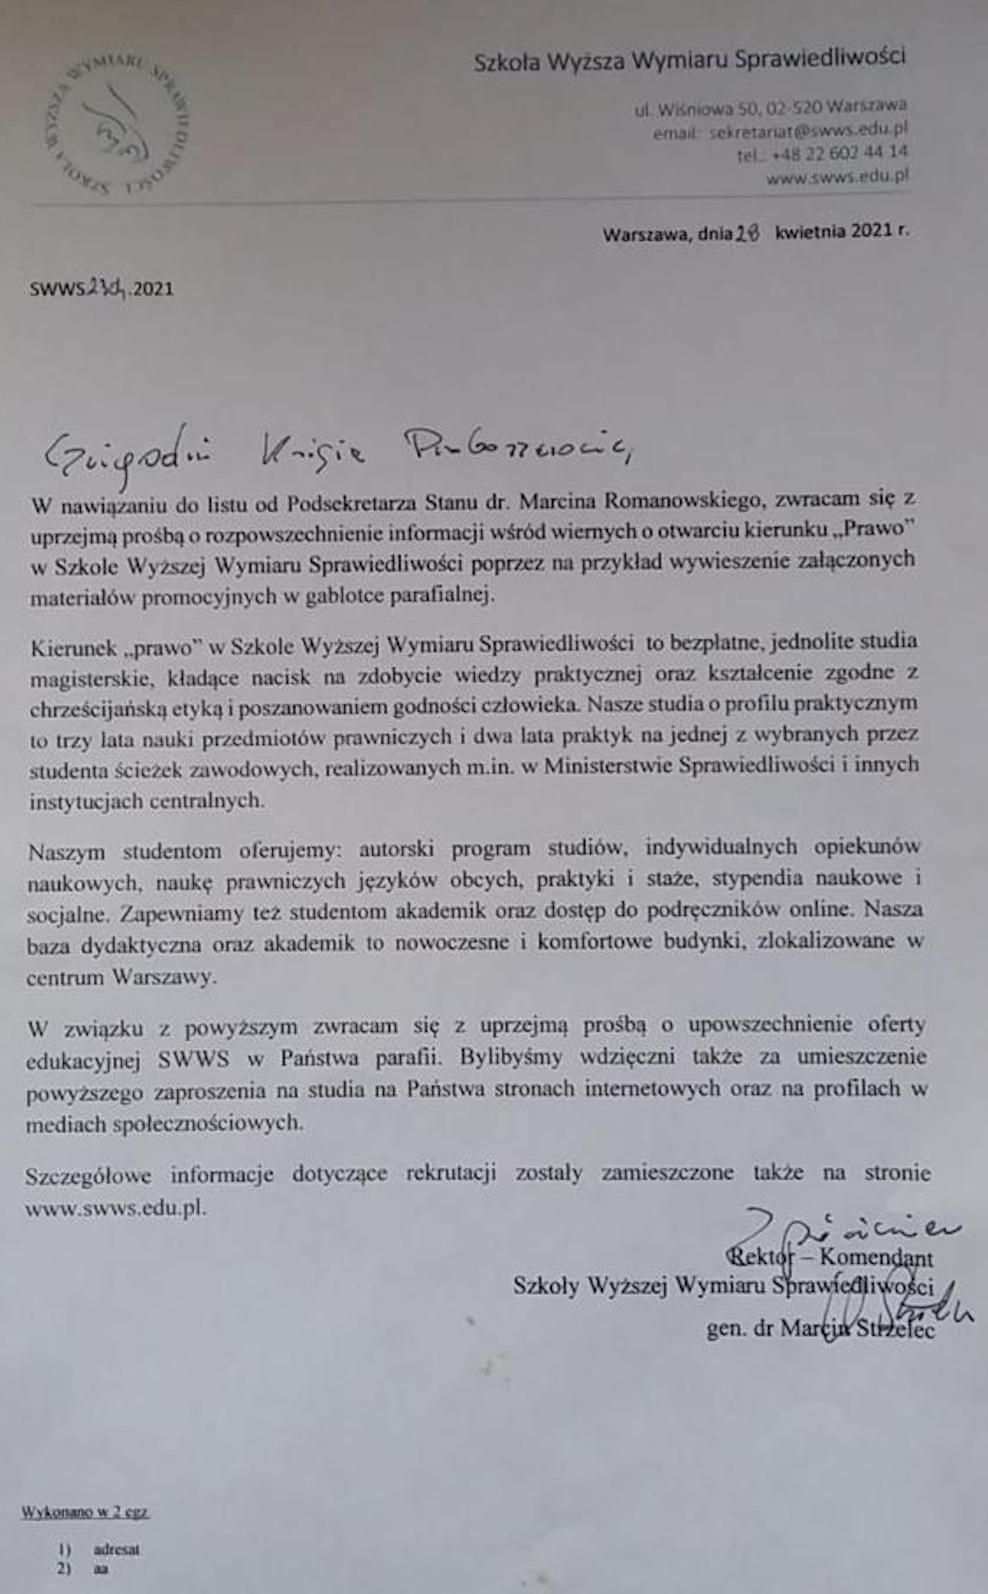 Gen. dr Marcin Strzelec, rektor Szkoły Wyższej Wymiaru Sprawiedliwości pisze do proboszczów z prośbą o pomoc w rekrutacji.